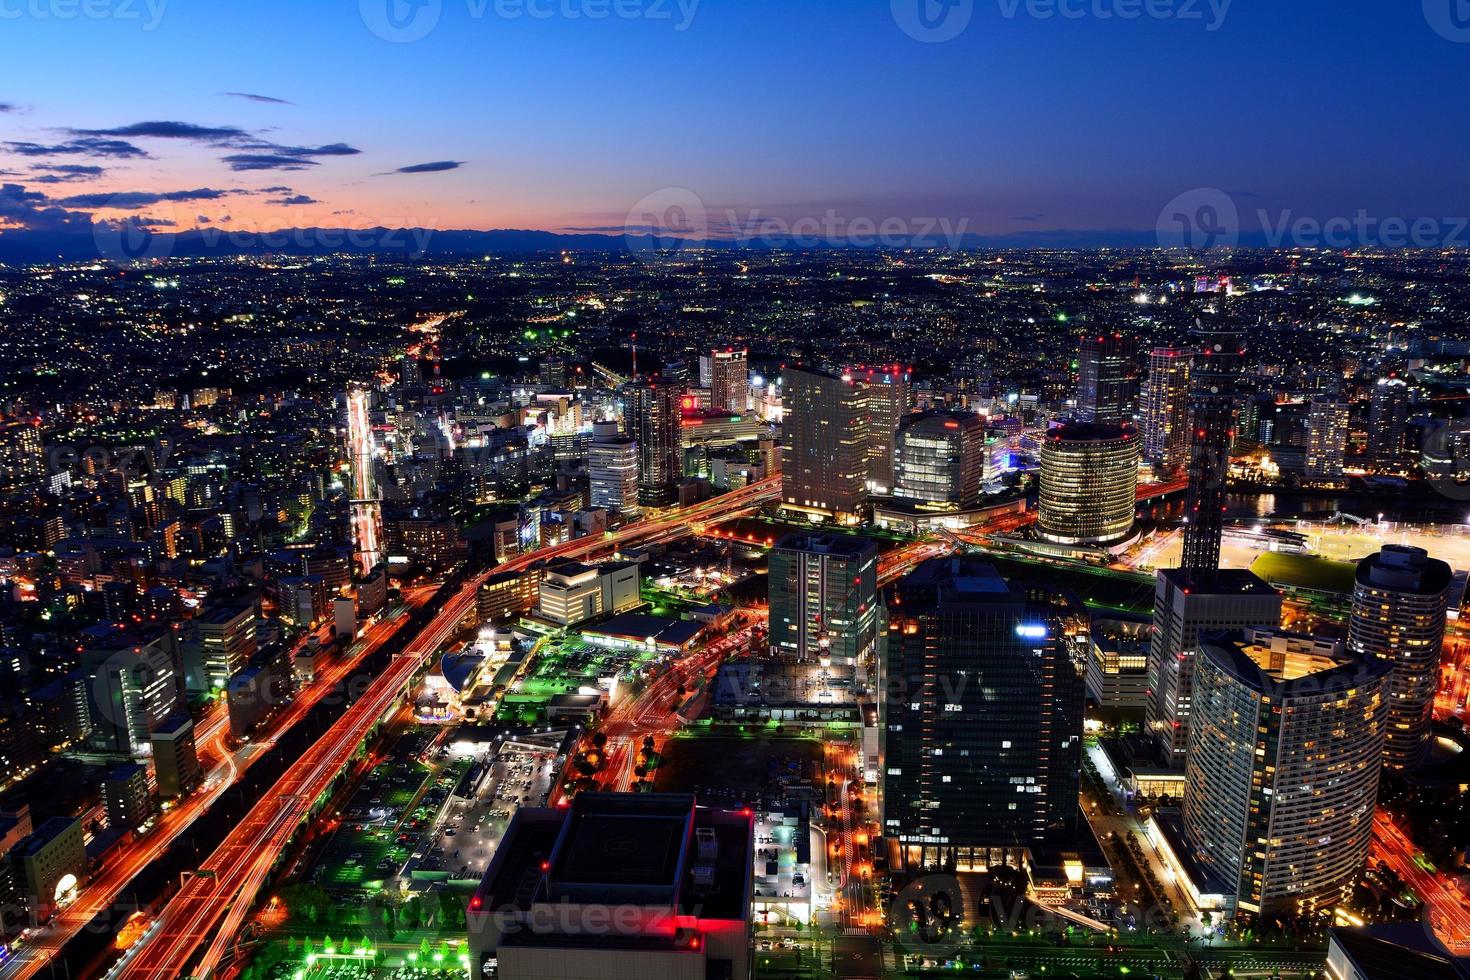 Yokohama minato mirai nightcape photo